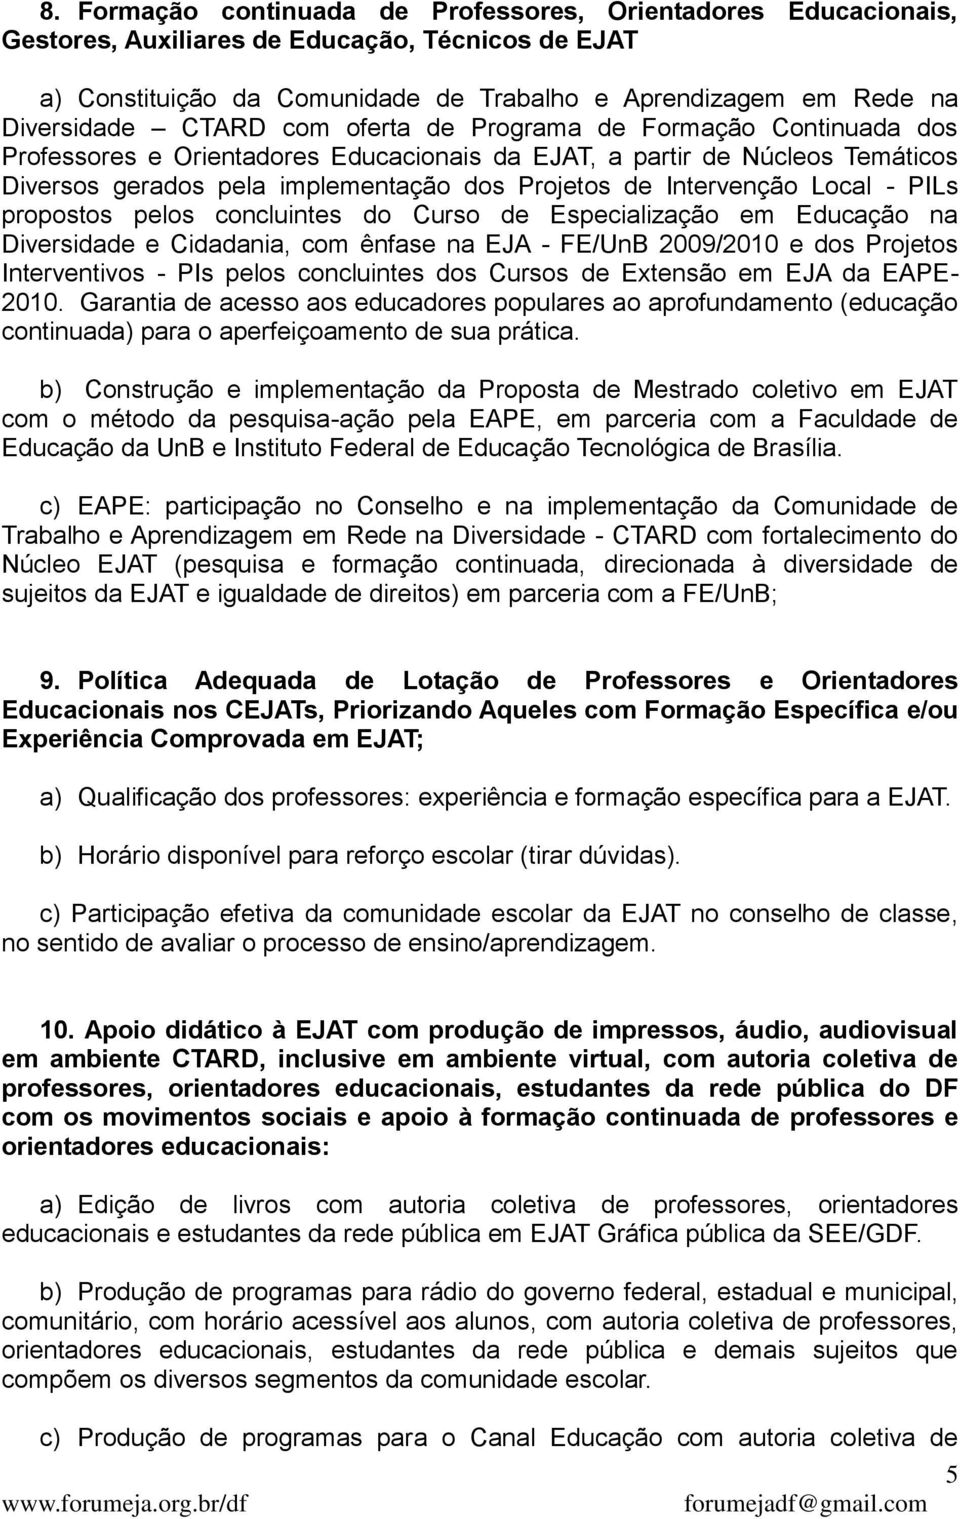 Local - PILs propostos pelos concluintes do Curso de Especialização em Educação na Diversidade e Cidadania, com ênfase na EJA - FE/UnB 2009/2010 e dos Projetos Interventivos - PIs pelos concluintes